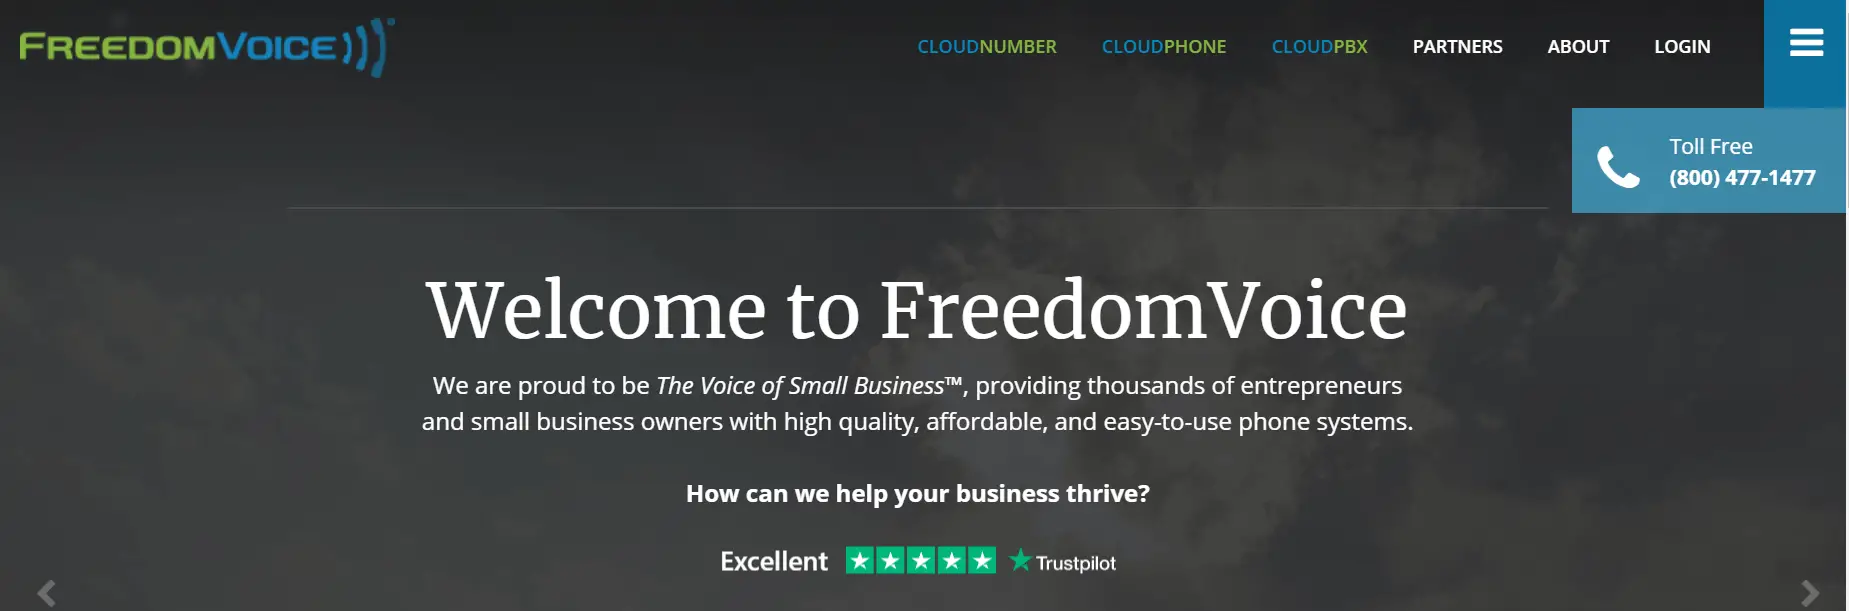 La page d'accueil de FreedomVoice.